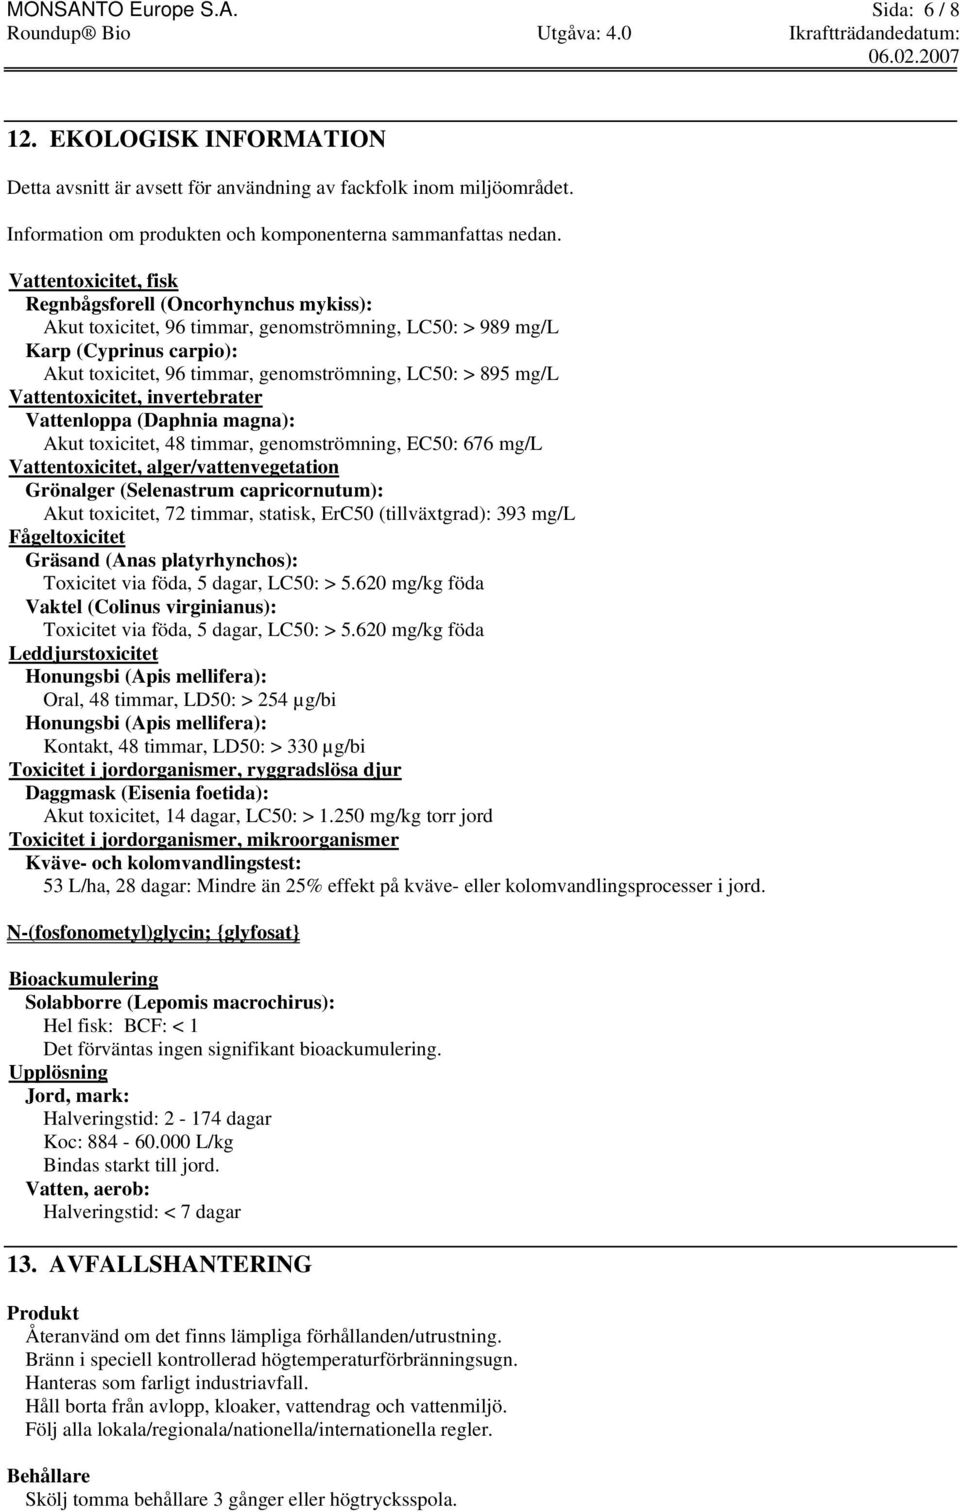 mg/l Vattentoxicitet, invertebrater Vattenloppa (Daphnia magna): Akut toxicitet, 48 timmar, genomströmning, EC50: 676 mg/l Vattentoxicitet, alger/vattenvegetation Grönalger (Selenastrum